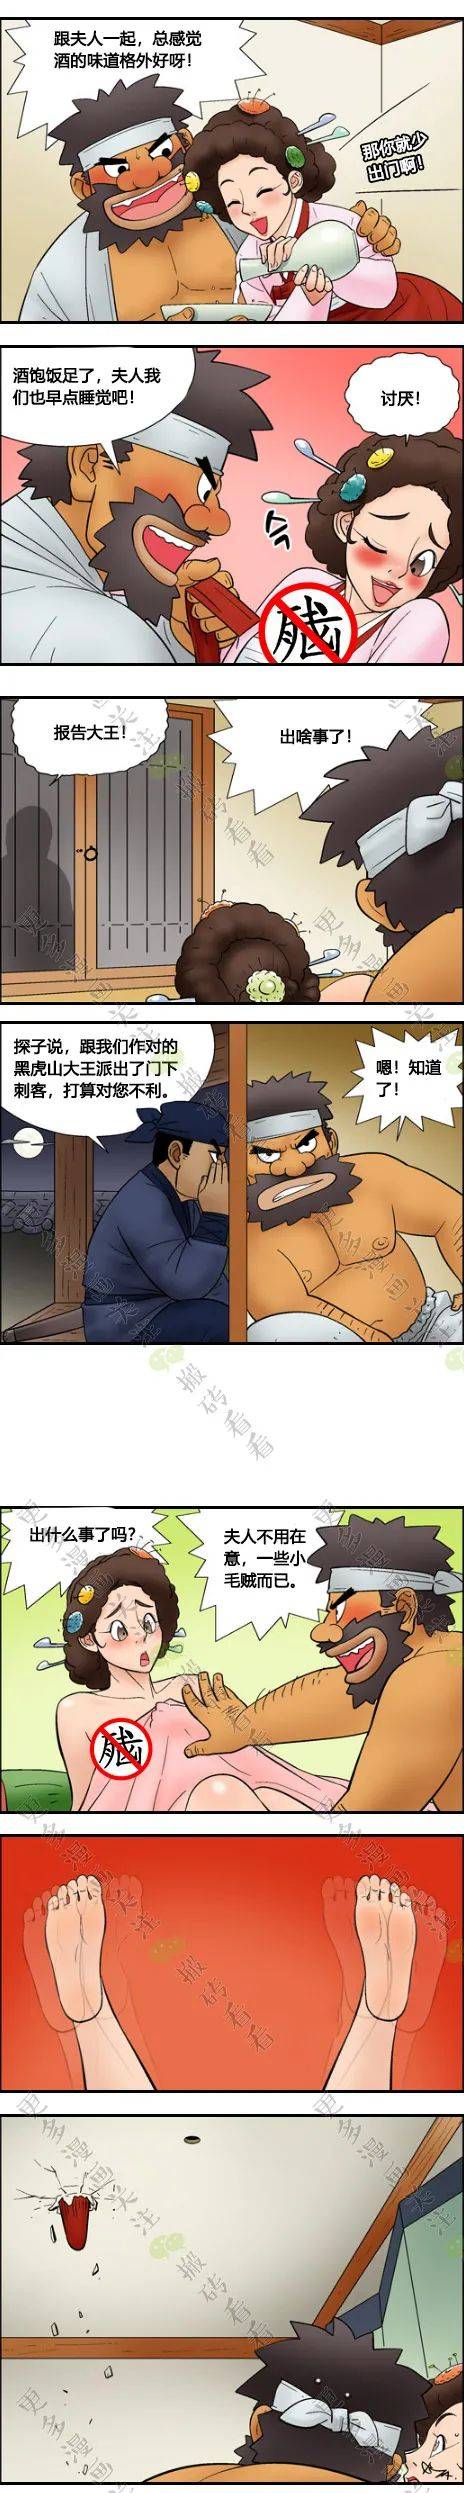 【短篇漫画】被刺杀的山大王_刺客